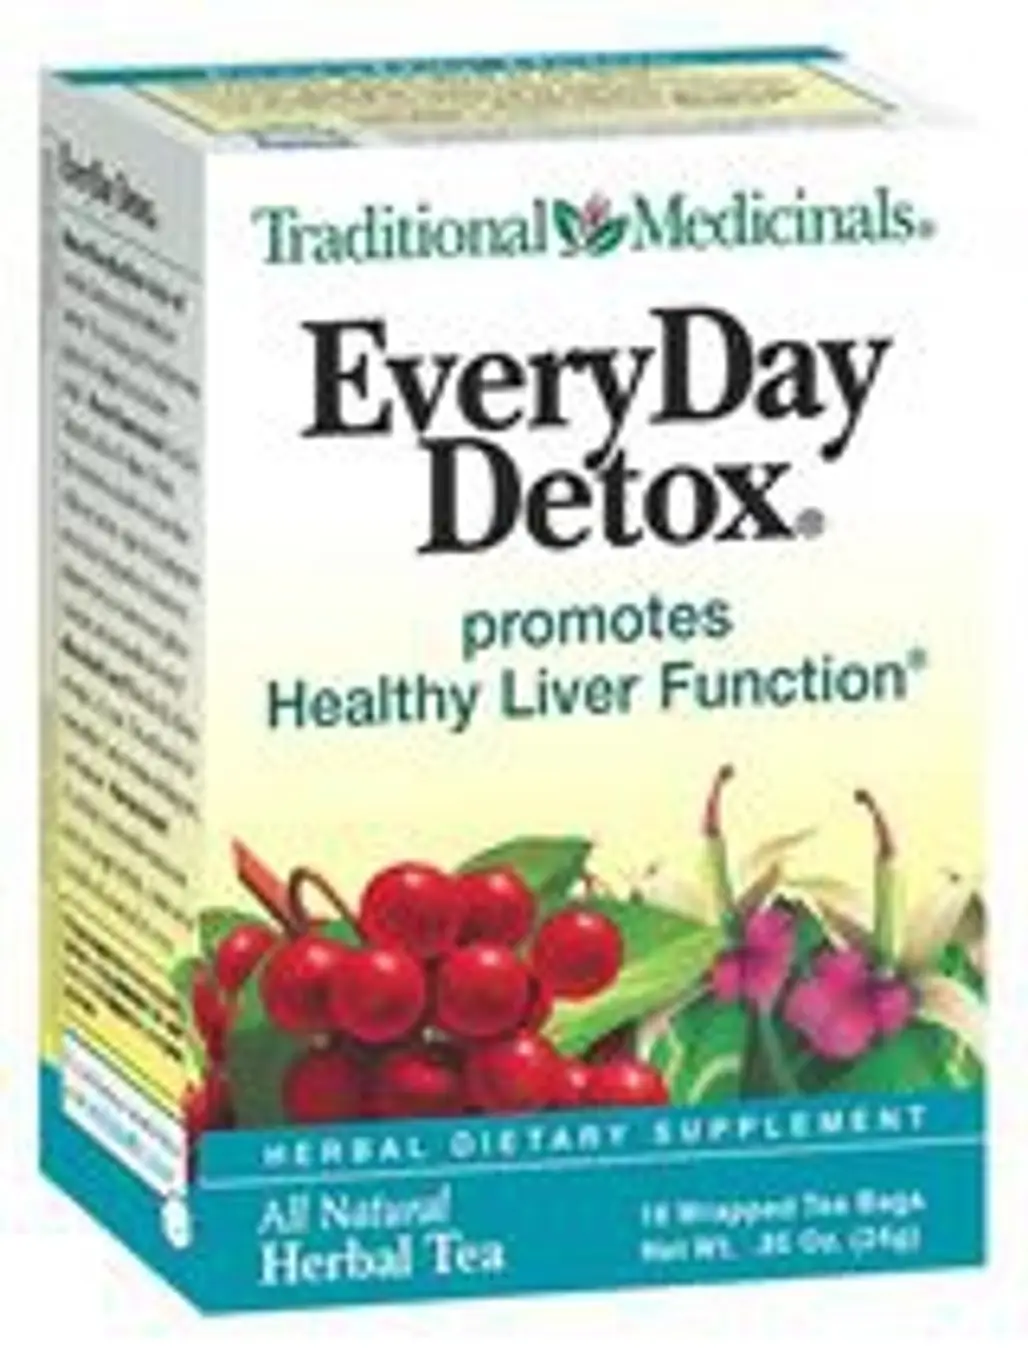 Traditional Medicinals Everyday Detox Tea